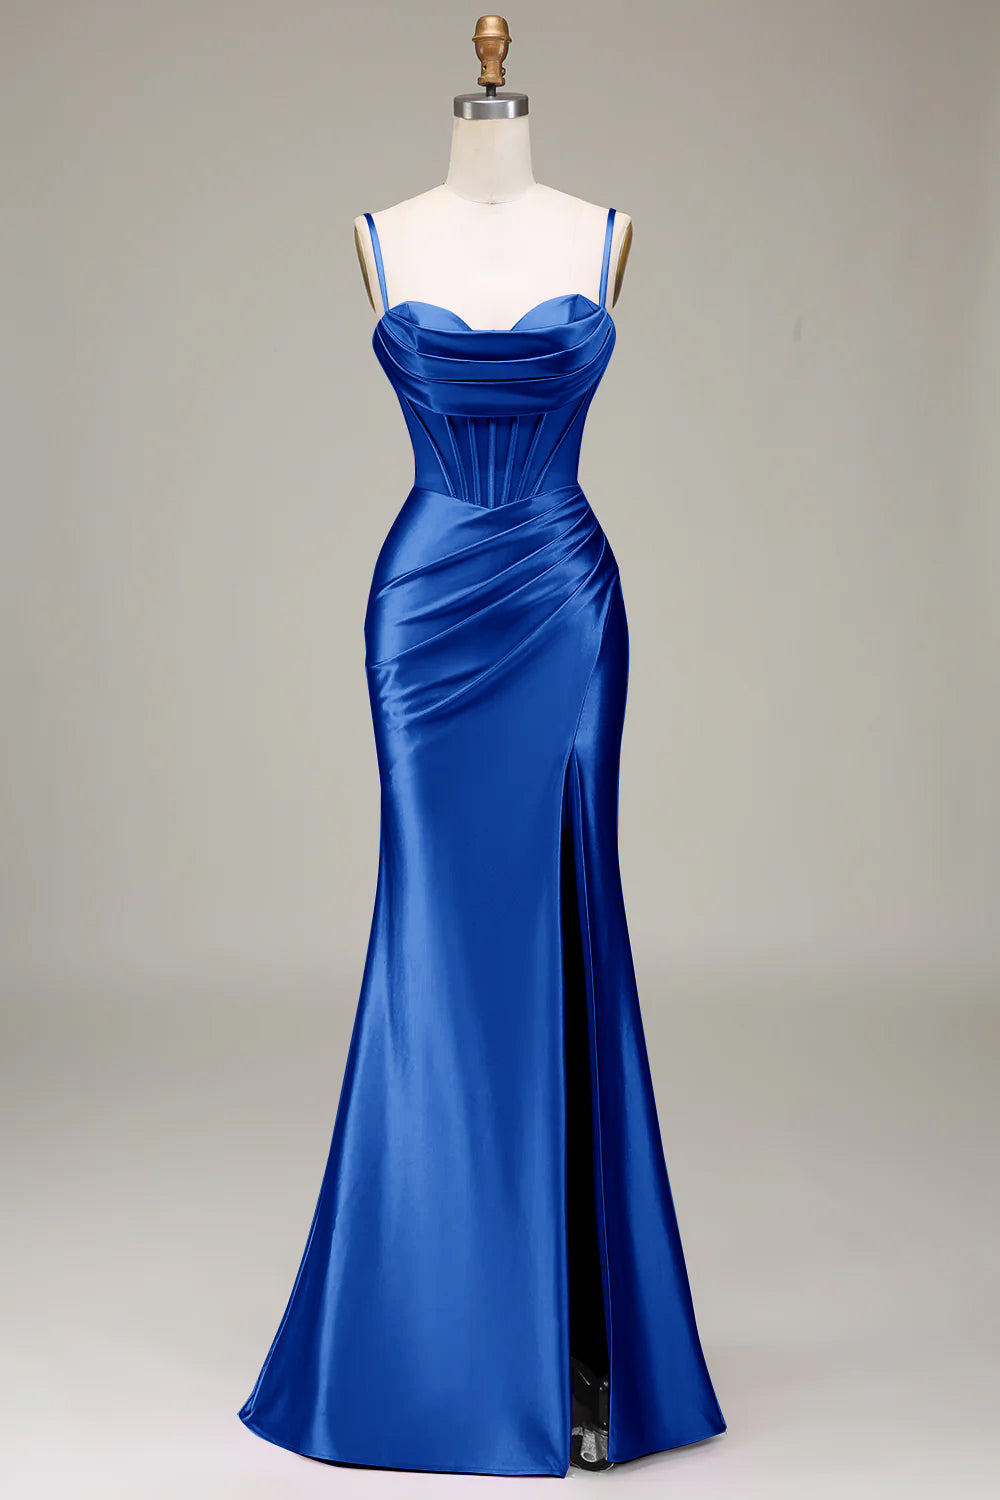 Vestido de baile sereia com alças finas azul royal e fenda